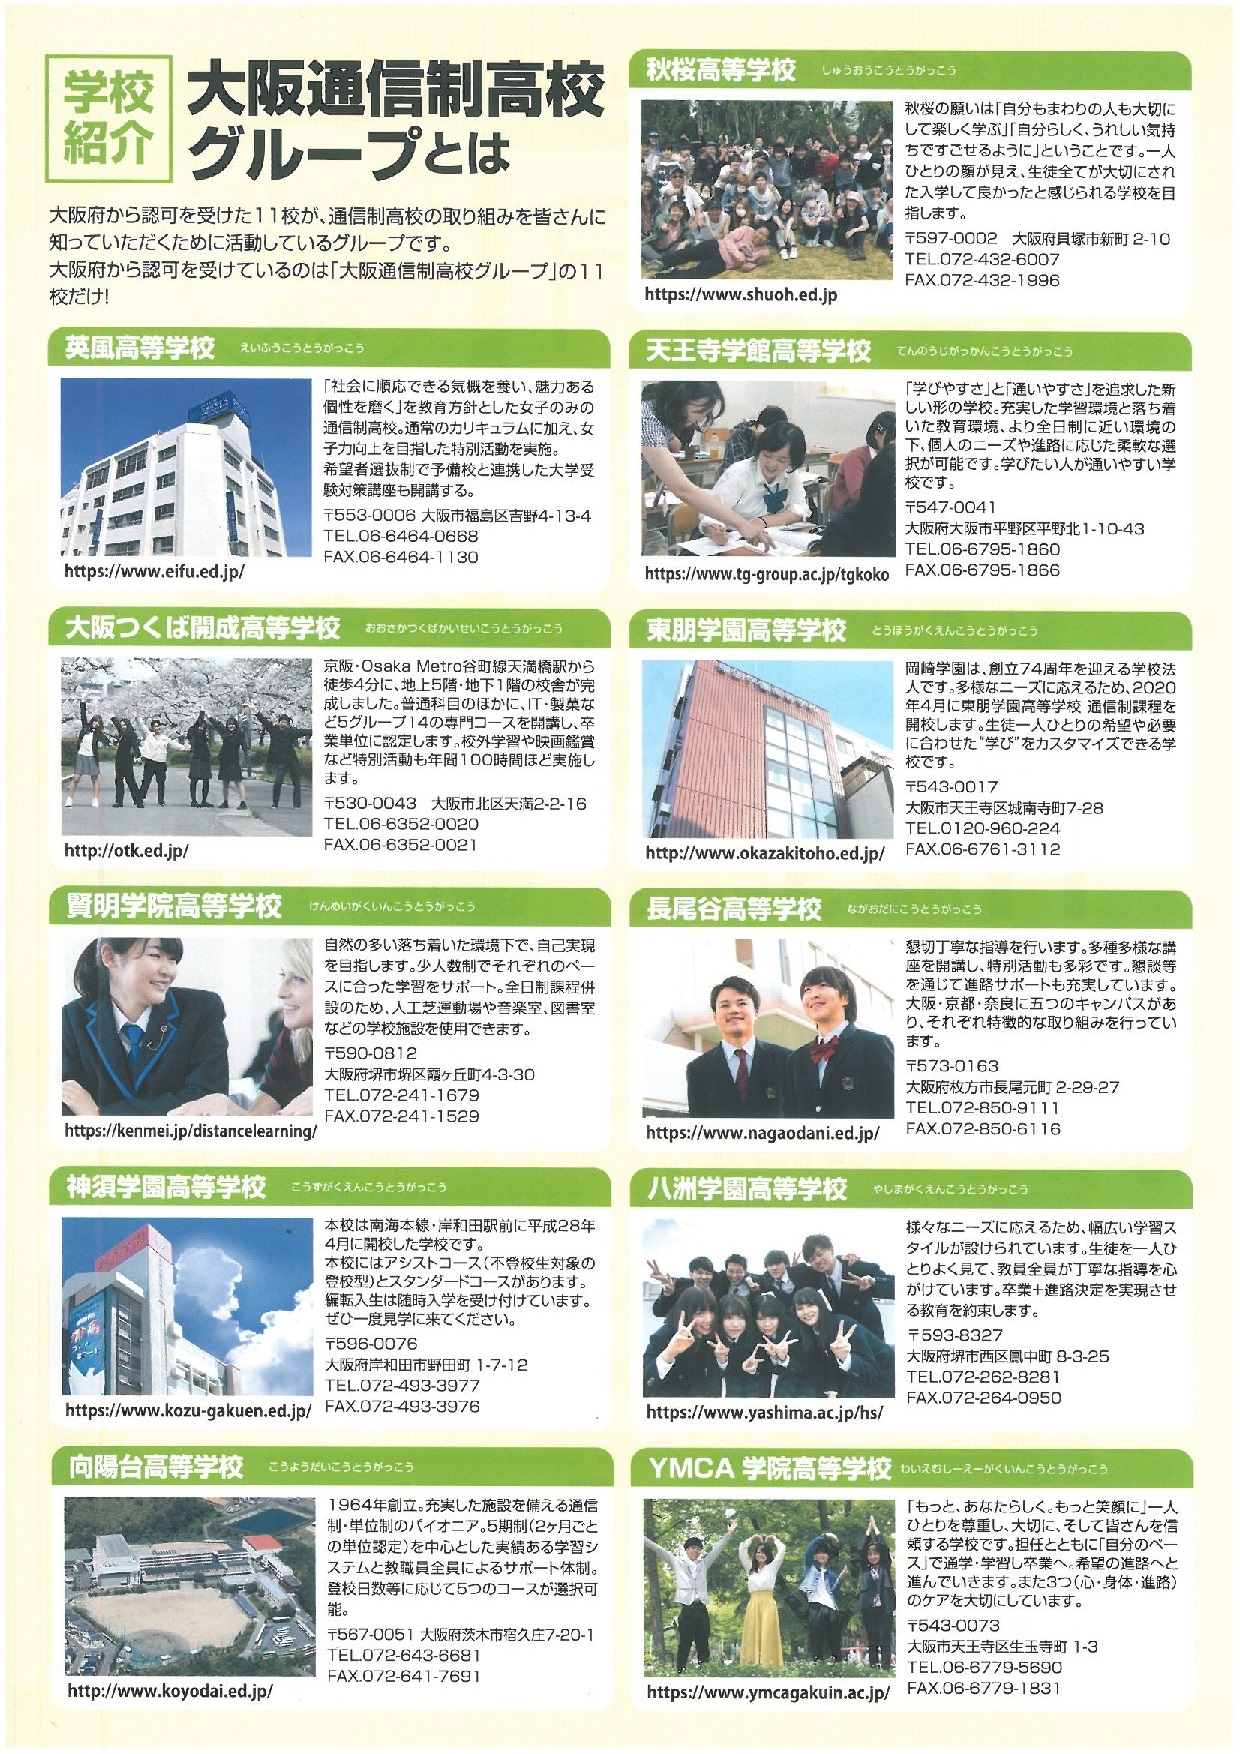 大阪通信制高校グループ 11 23に合同相談会を開催 通信制高校があるじゃん